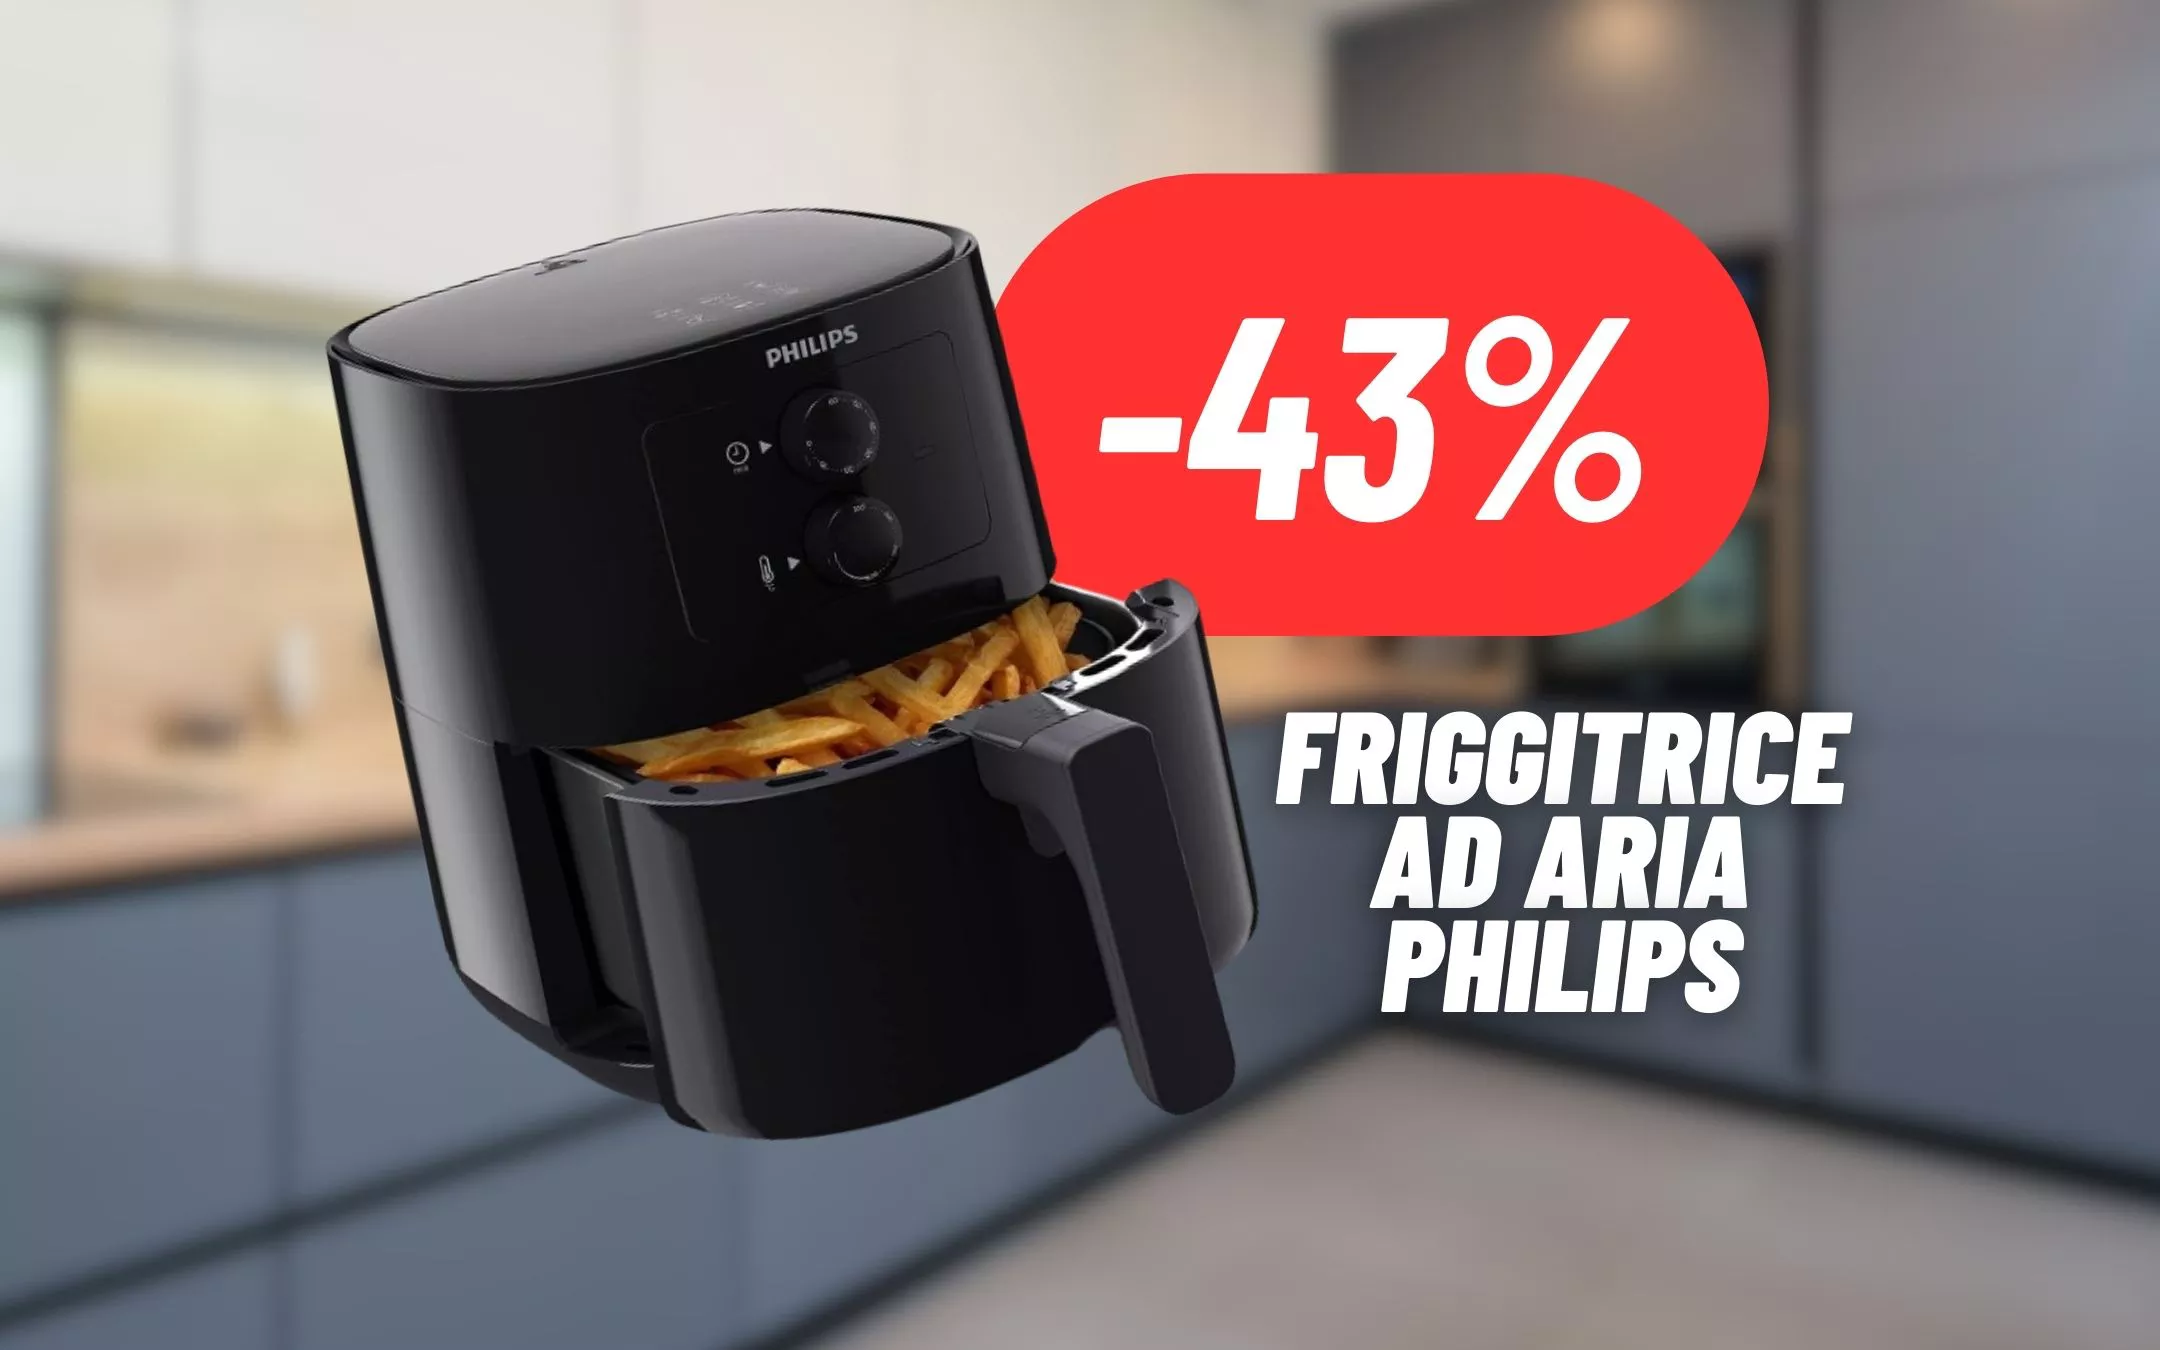 SCONTO FOLLE sulla friggitrice ad aria Philips:  FUORI TUTTO